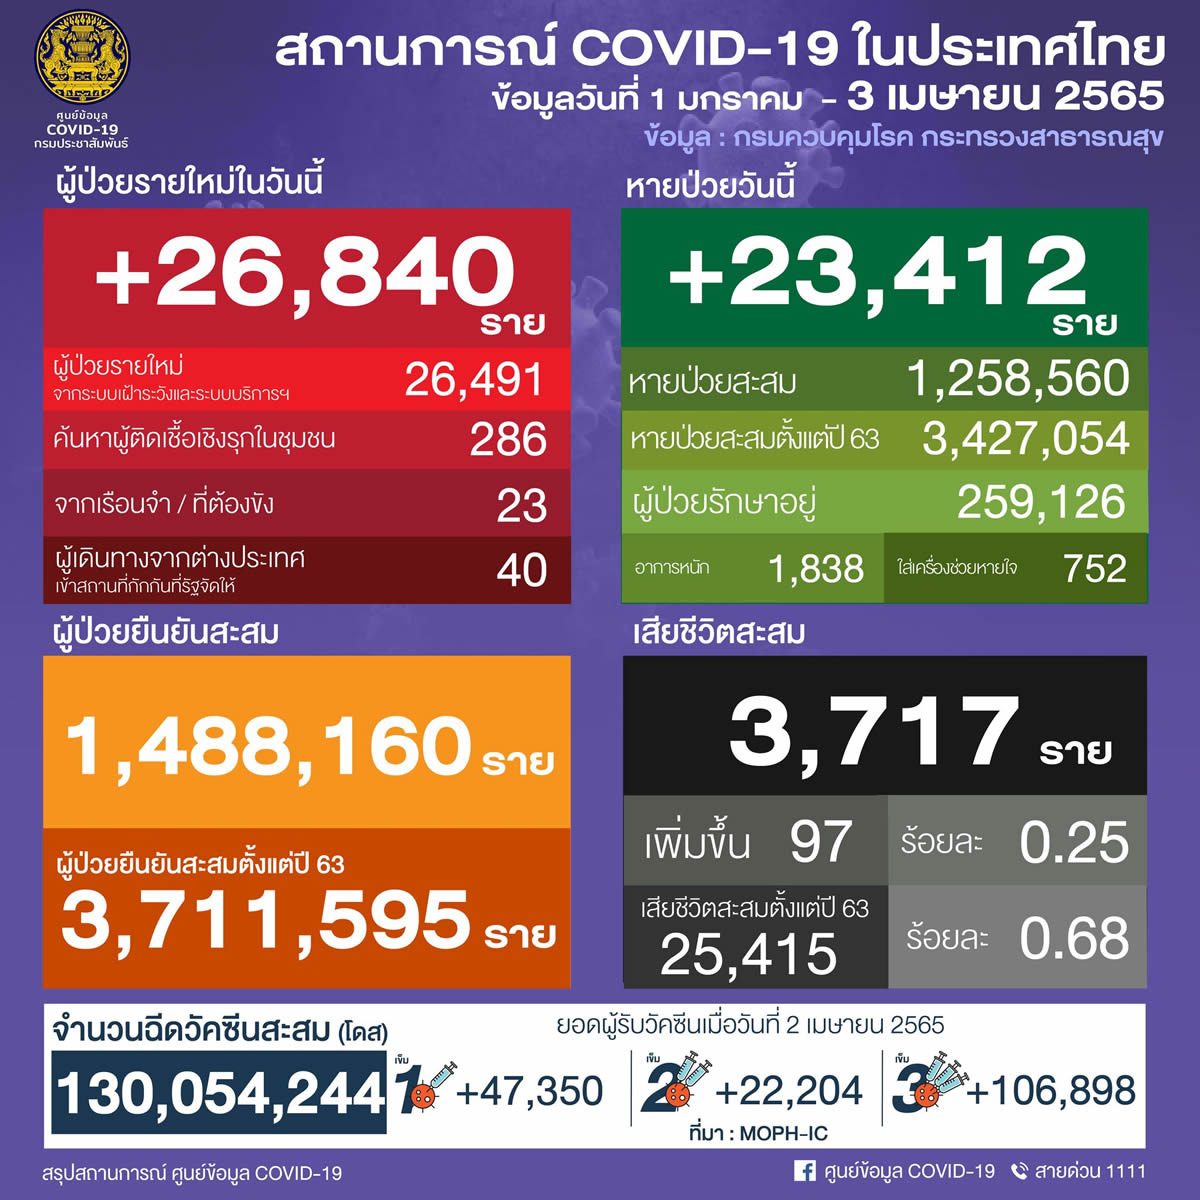 タイ 26,840人陽性 97人死亡／バンコク 3,095人陽性／チョンブリ 1,300人陽性／ナコンシータマラート 965人陽性［2022年4月3日発表］